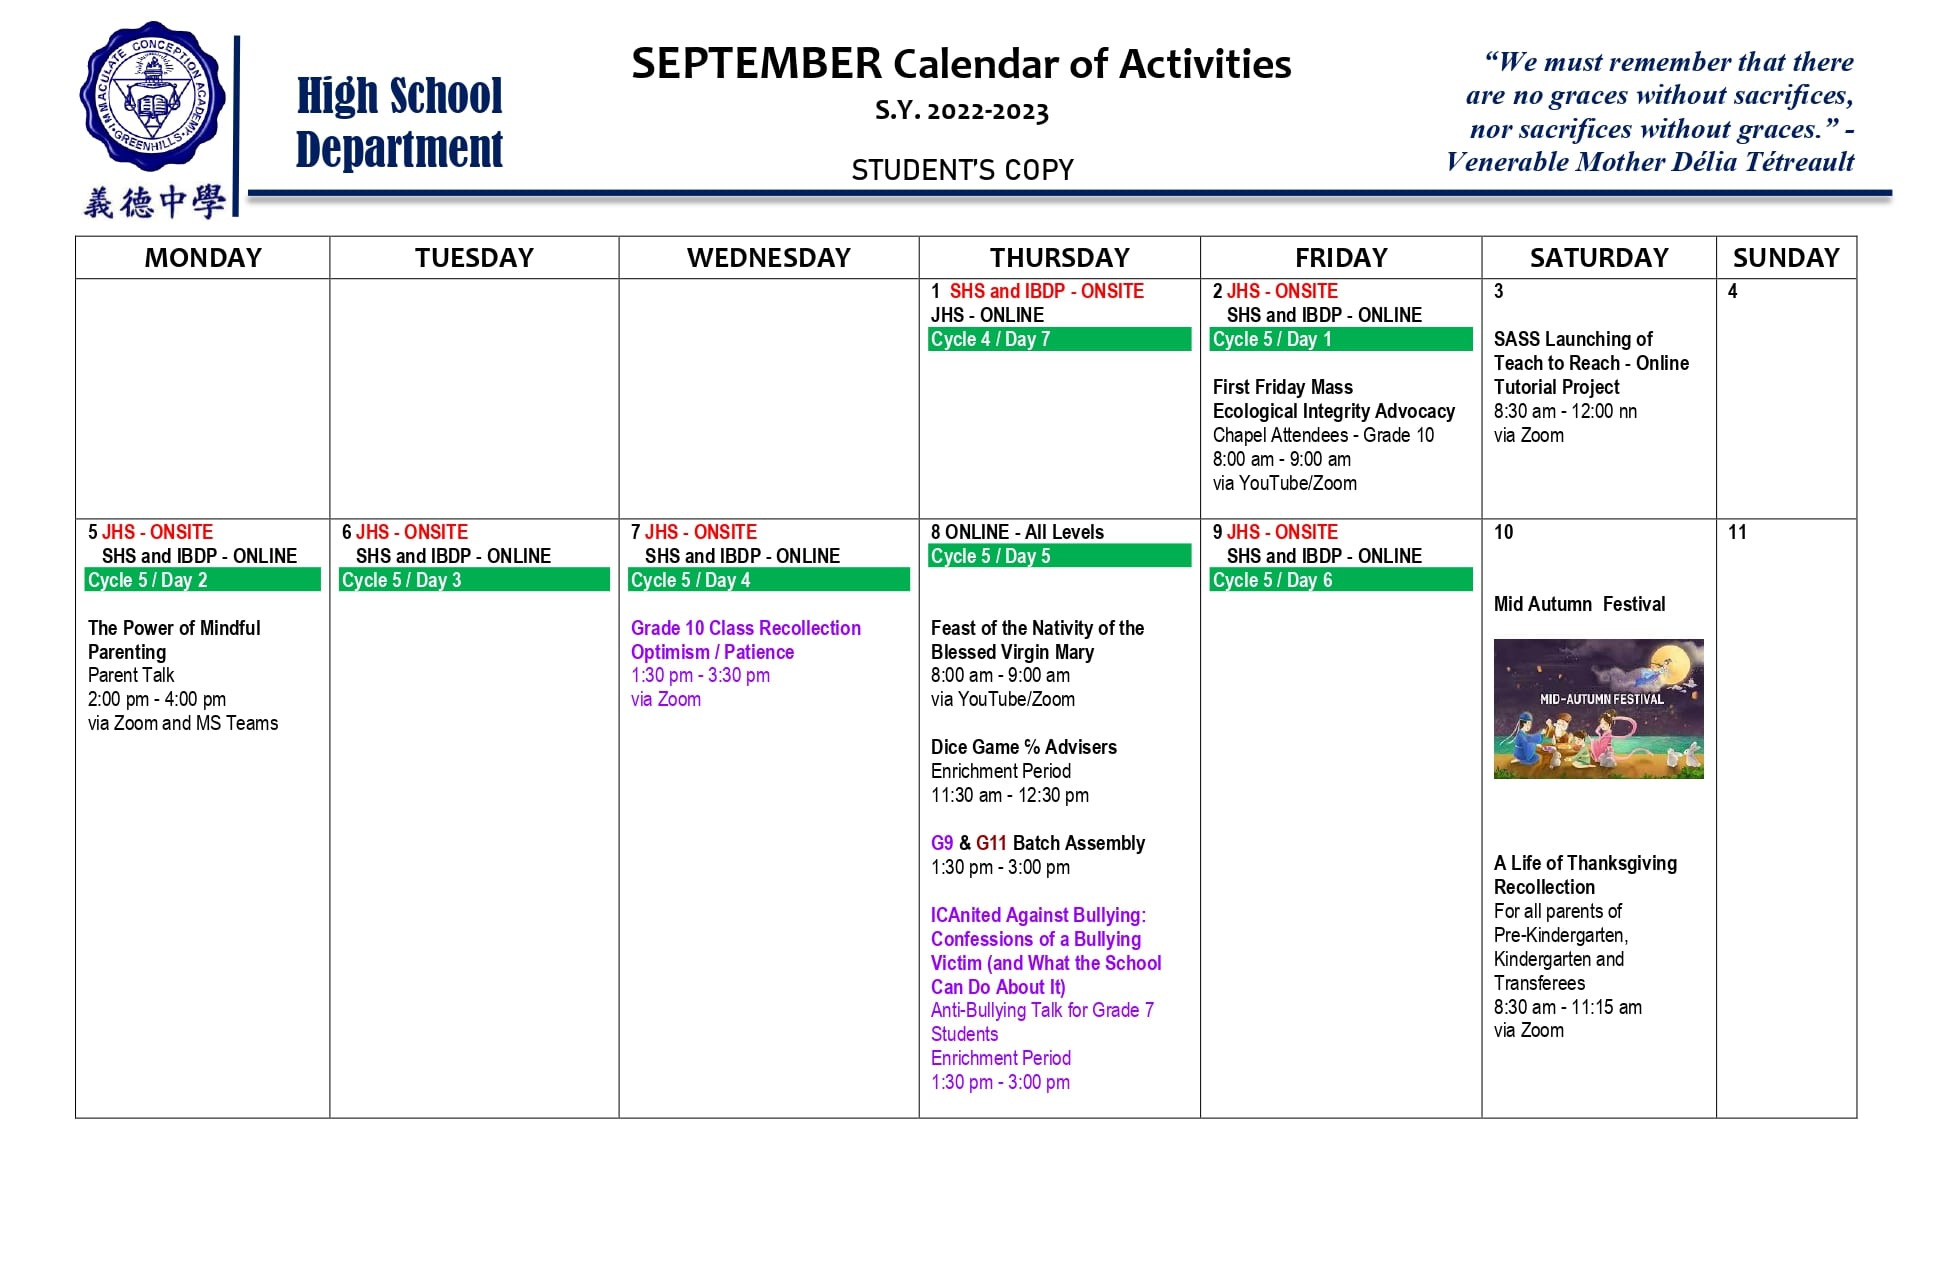 High School September 2022 Calendar of Activities - Immaculate ...